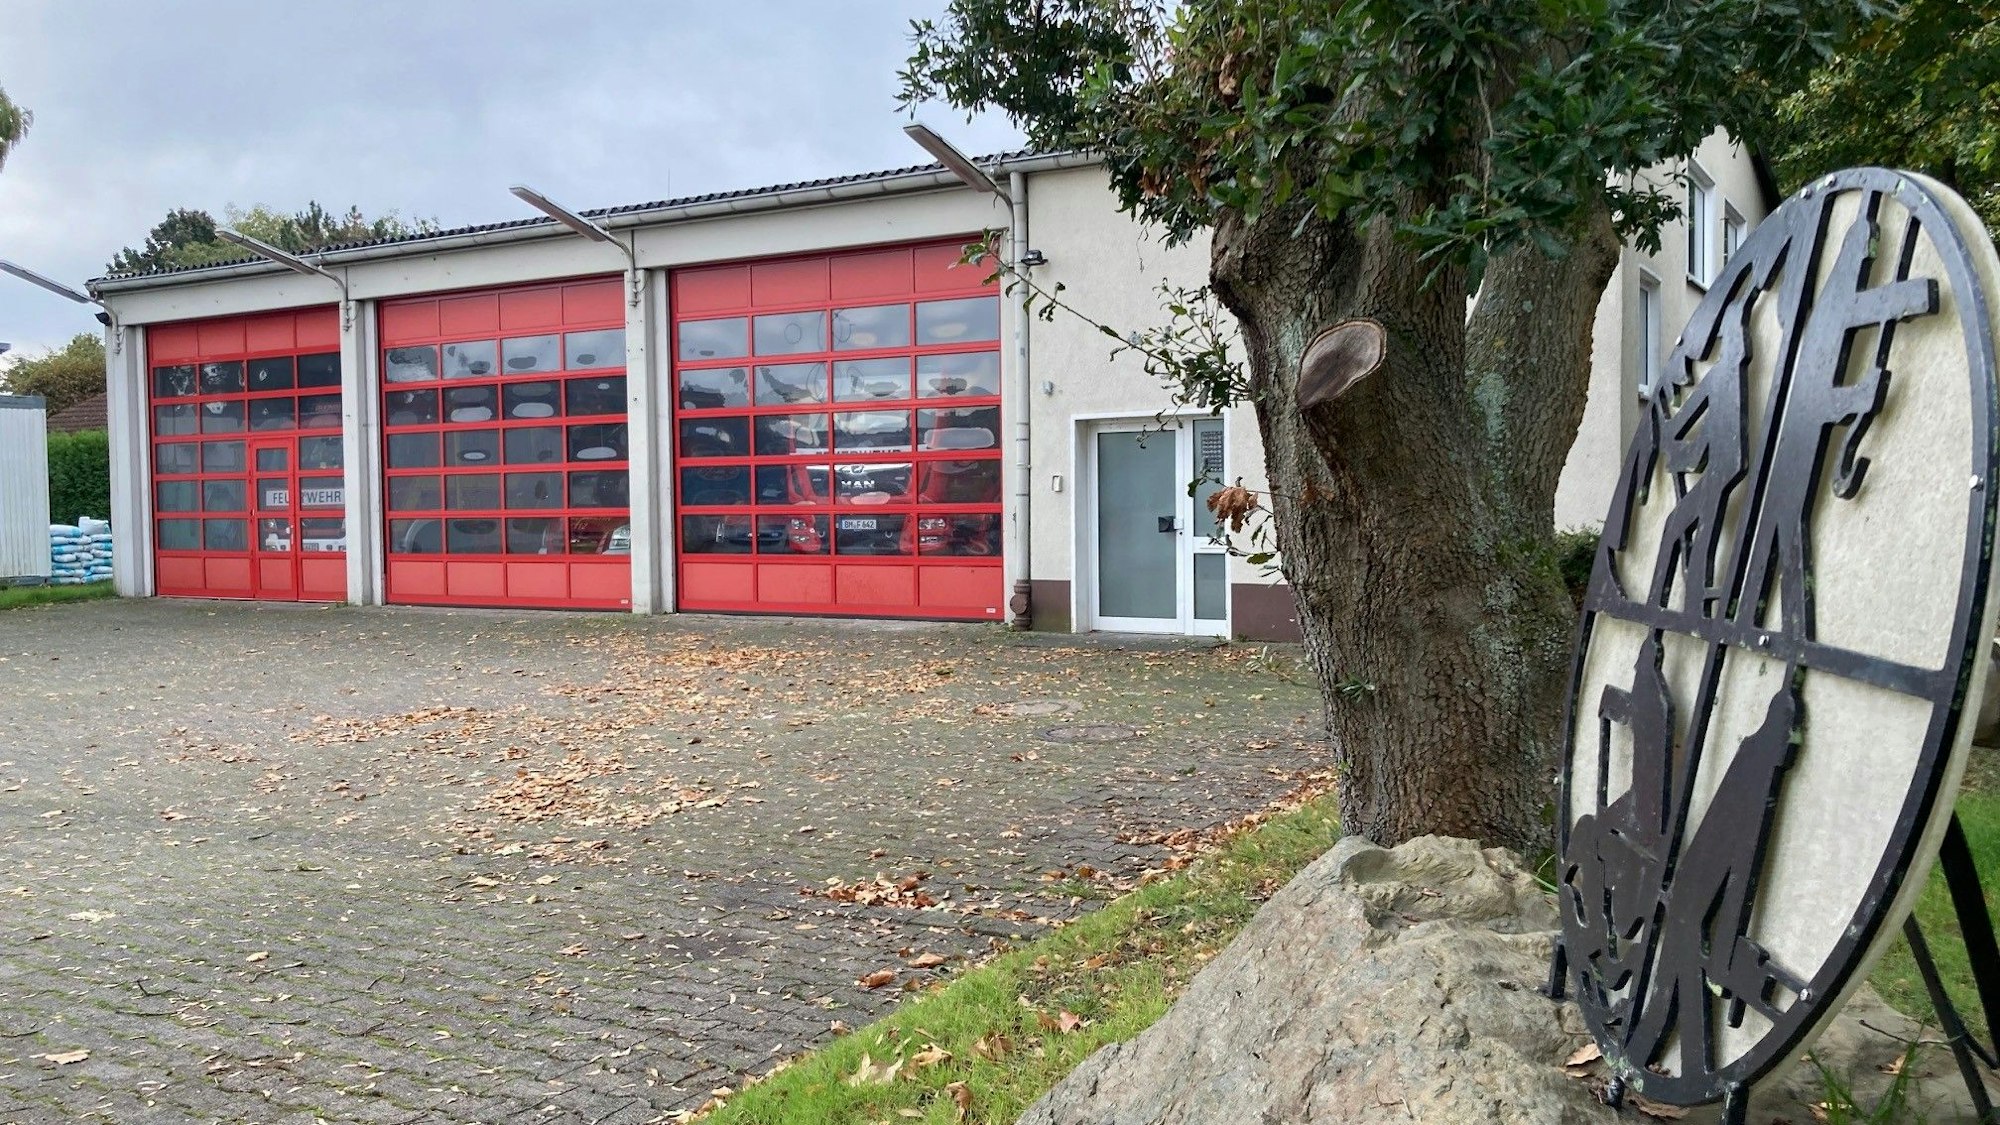 Das Feuerwehrgerätehaus in Habbelrath ist von außen zu sehen, rechts das Logo der Feuerwehr, daneben ein Baum.